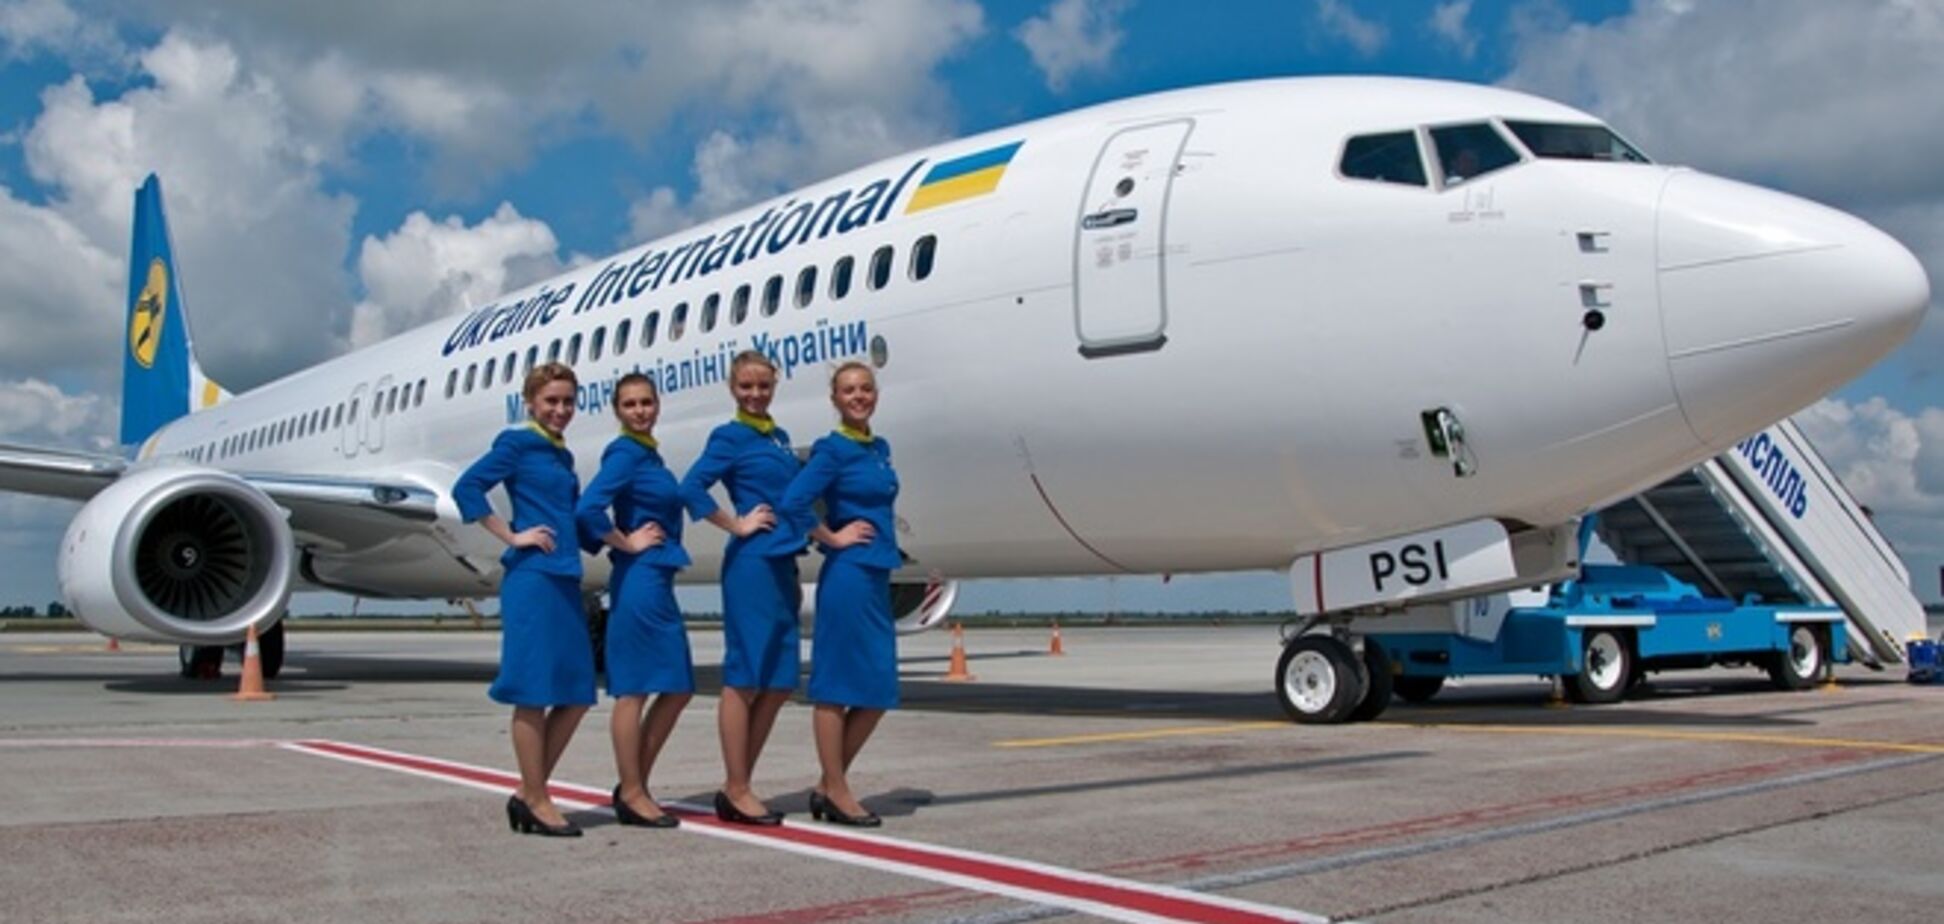 В Украине началась распродажа билетов на авиарейсы по $100